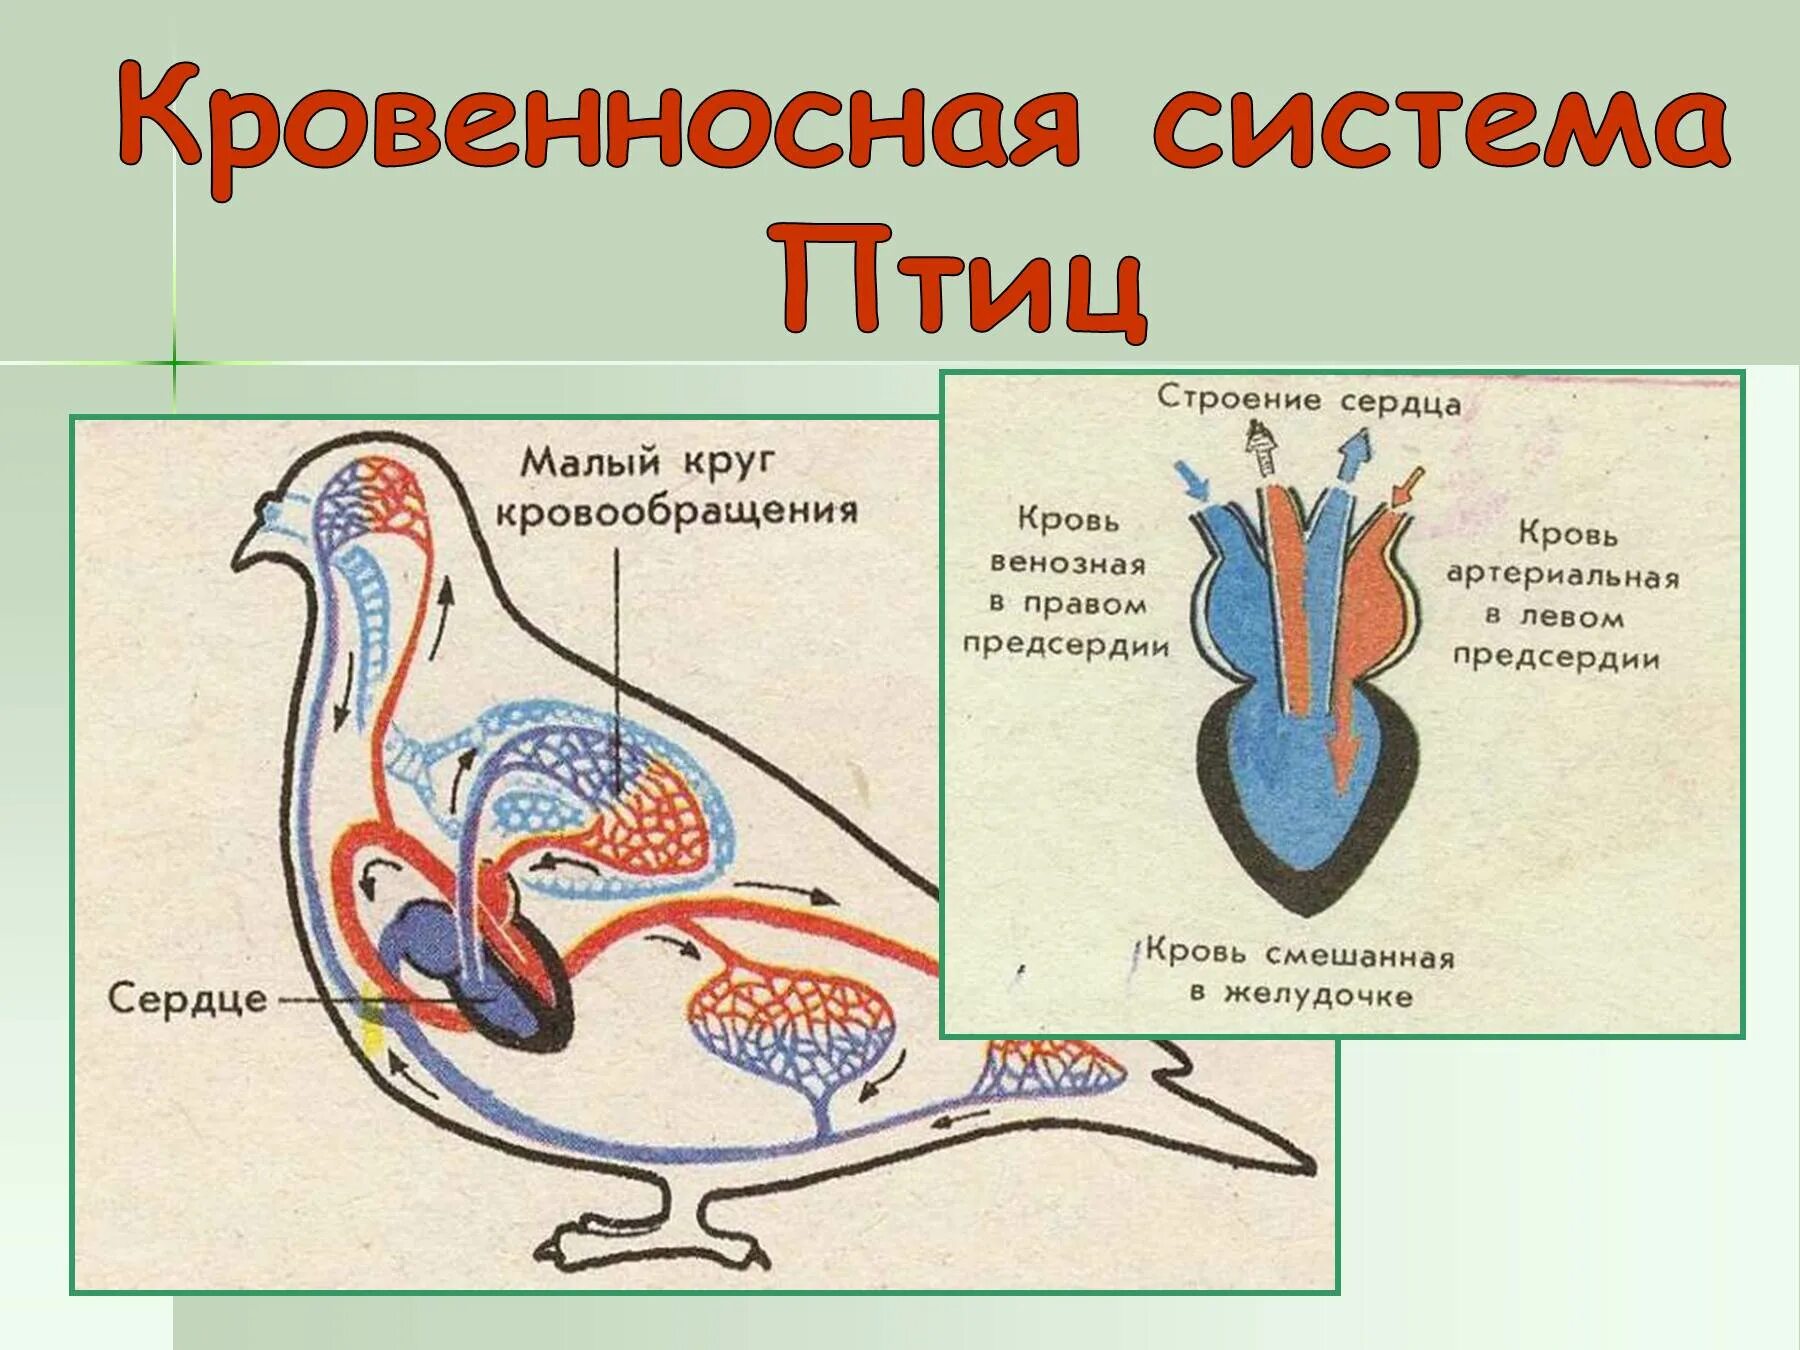 Система кровообращения птиц. Кровеносная система птиц схема. Строение кровеносной системы птиц. Строение сердца птиц. Схема кровообращения птиц